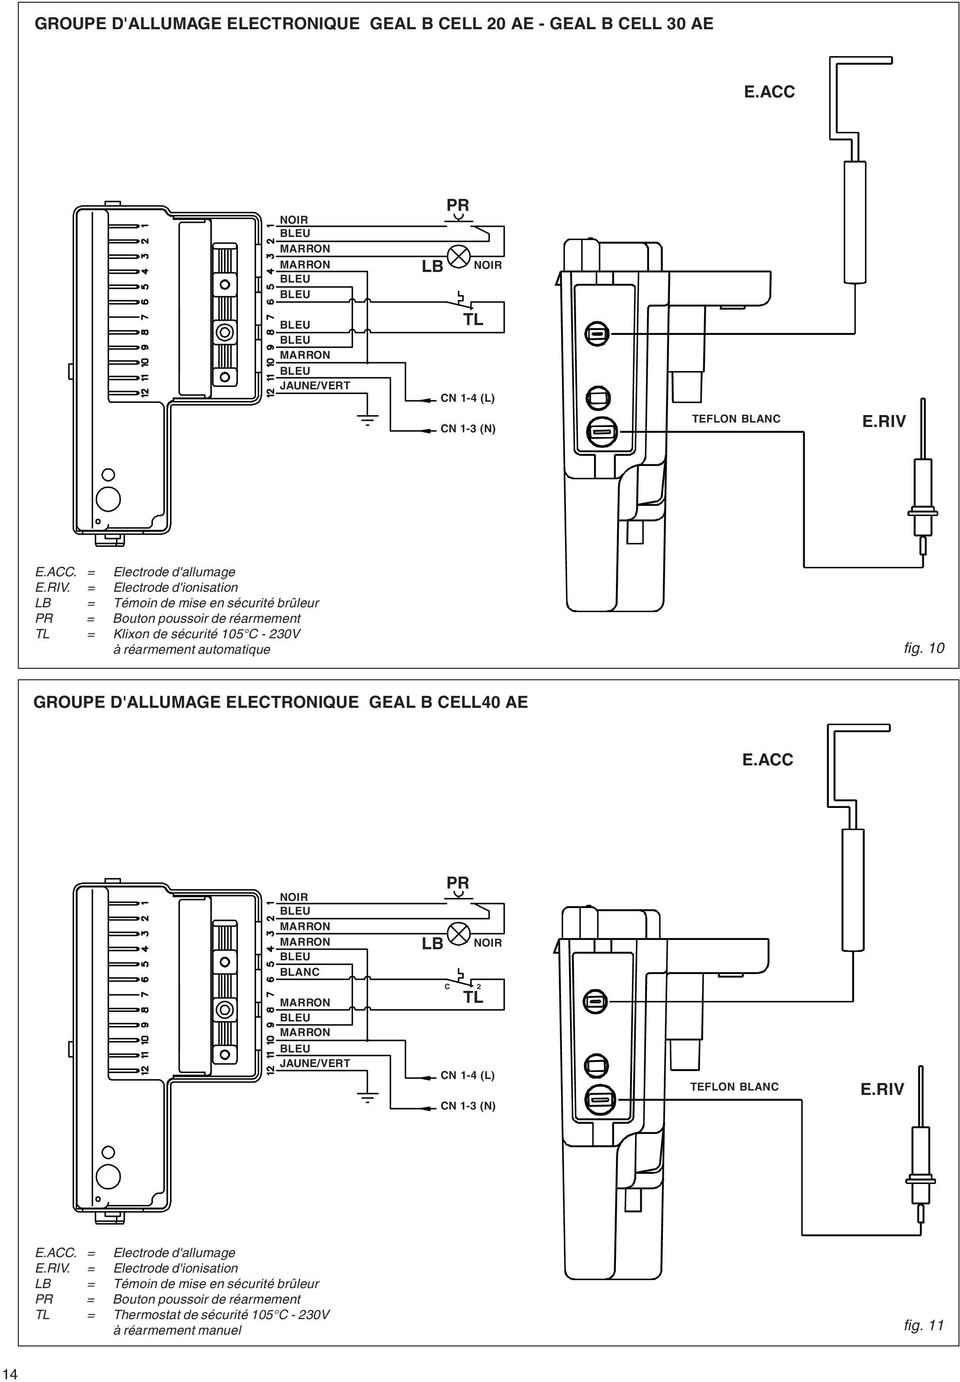 = Electrode d'ionisation LB = Témoin de mise en sécurité brûleur PR = Bouton poussoir de réarmement TL = Klixon de sécurité 105 C - 230V à réarmement automatique fig.